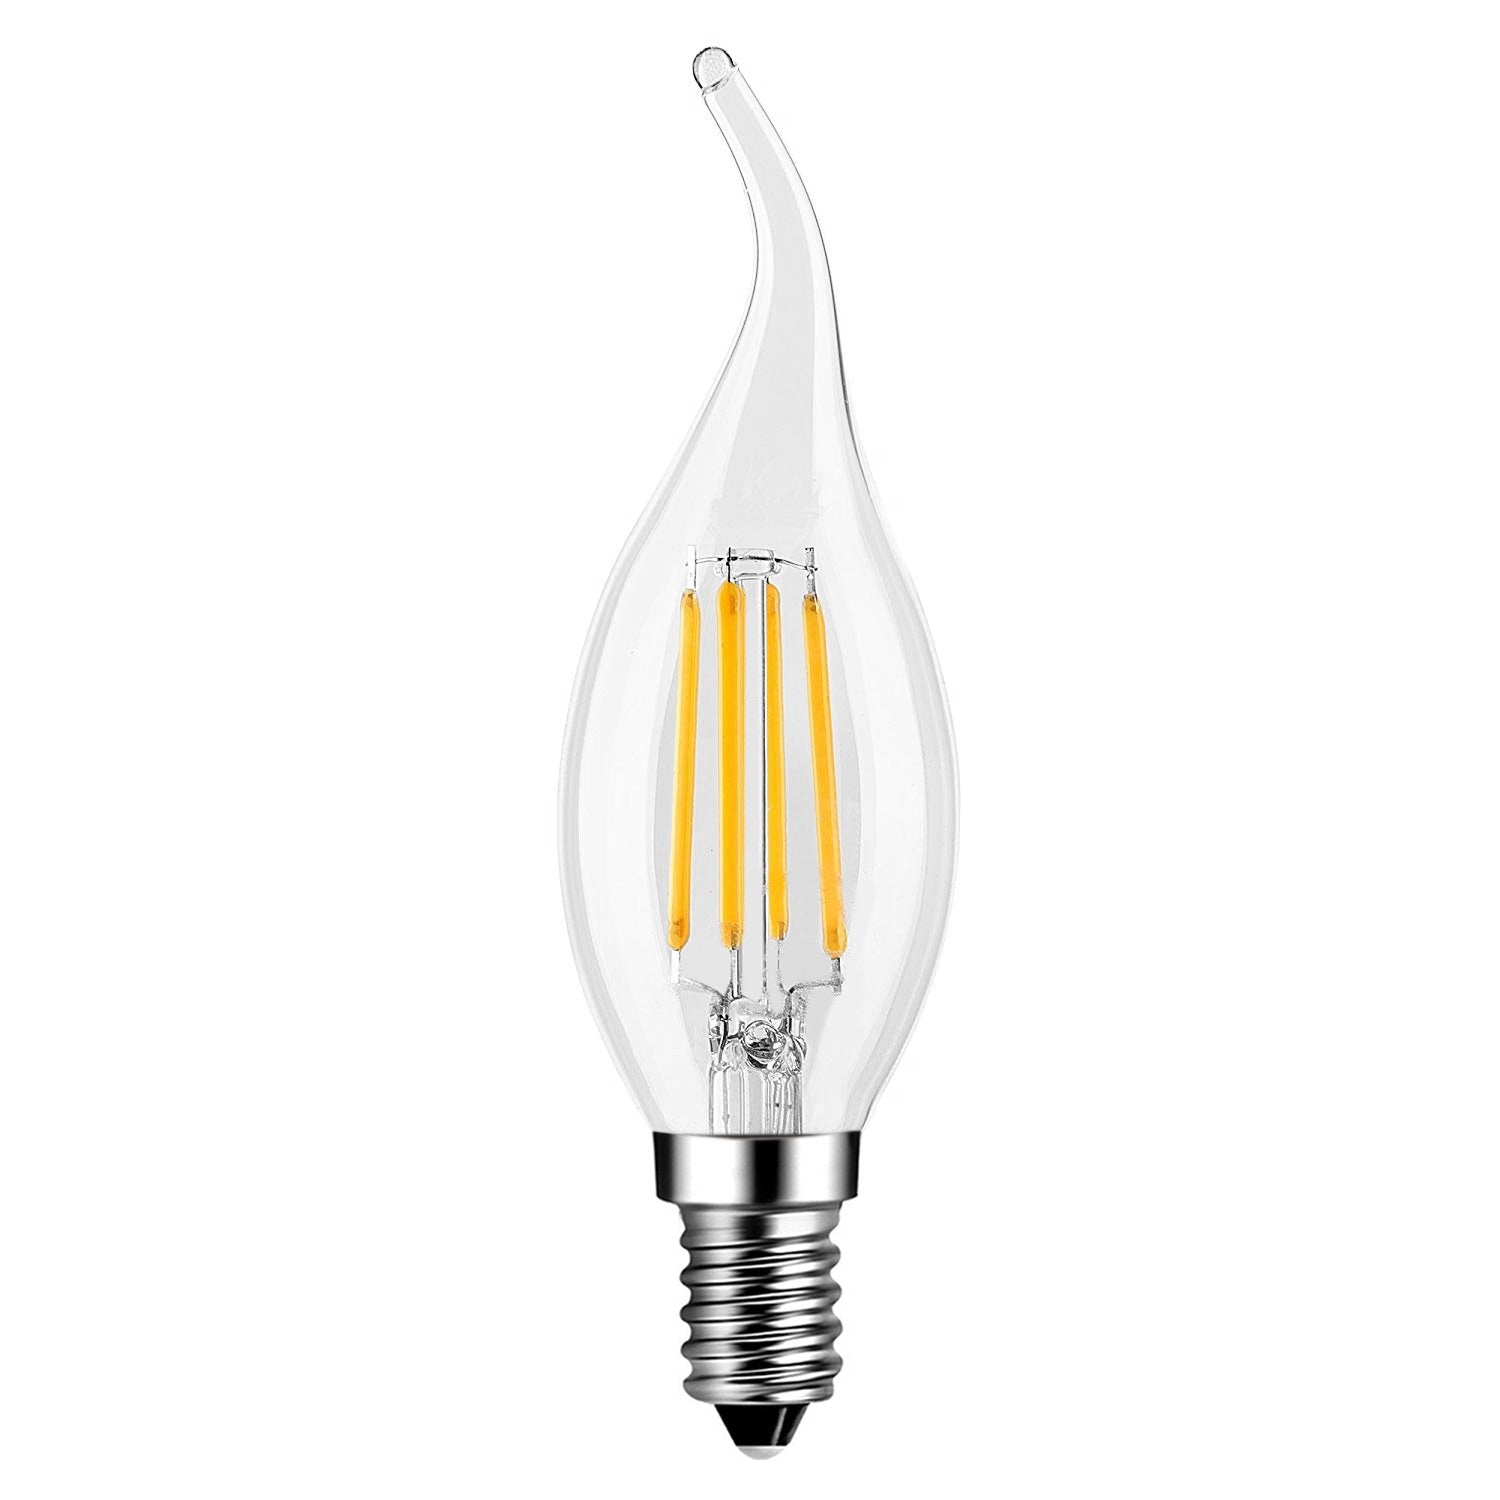 EXTRASTAR Ampoule Filament Bougie Vintage LED E14, 4W Ampoule LED